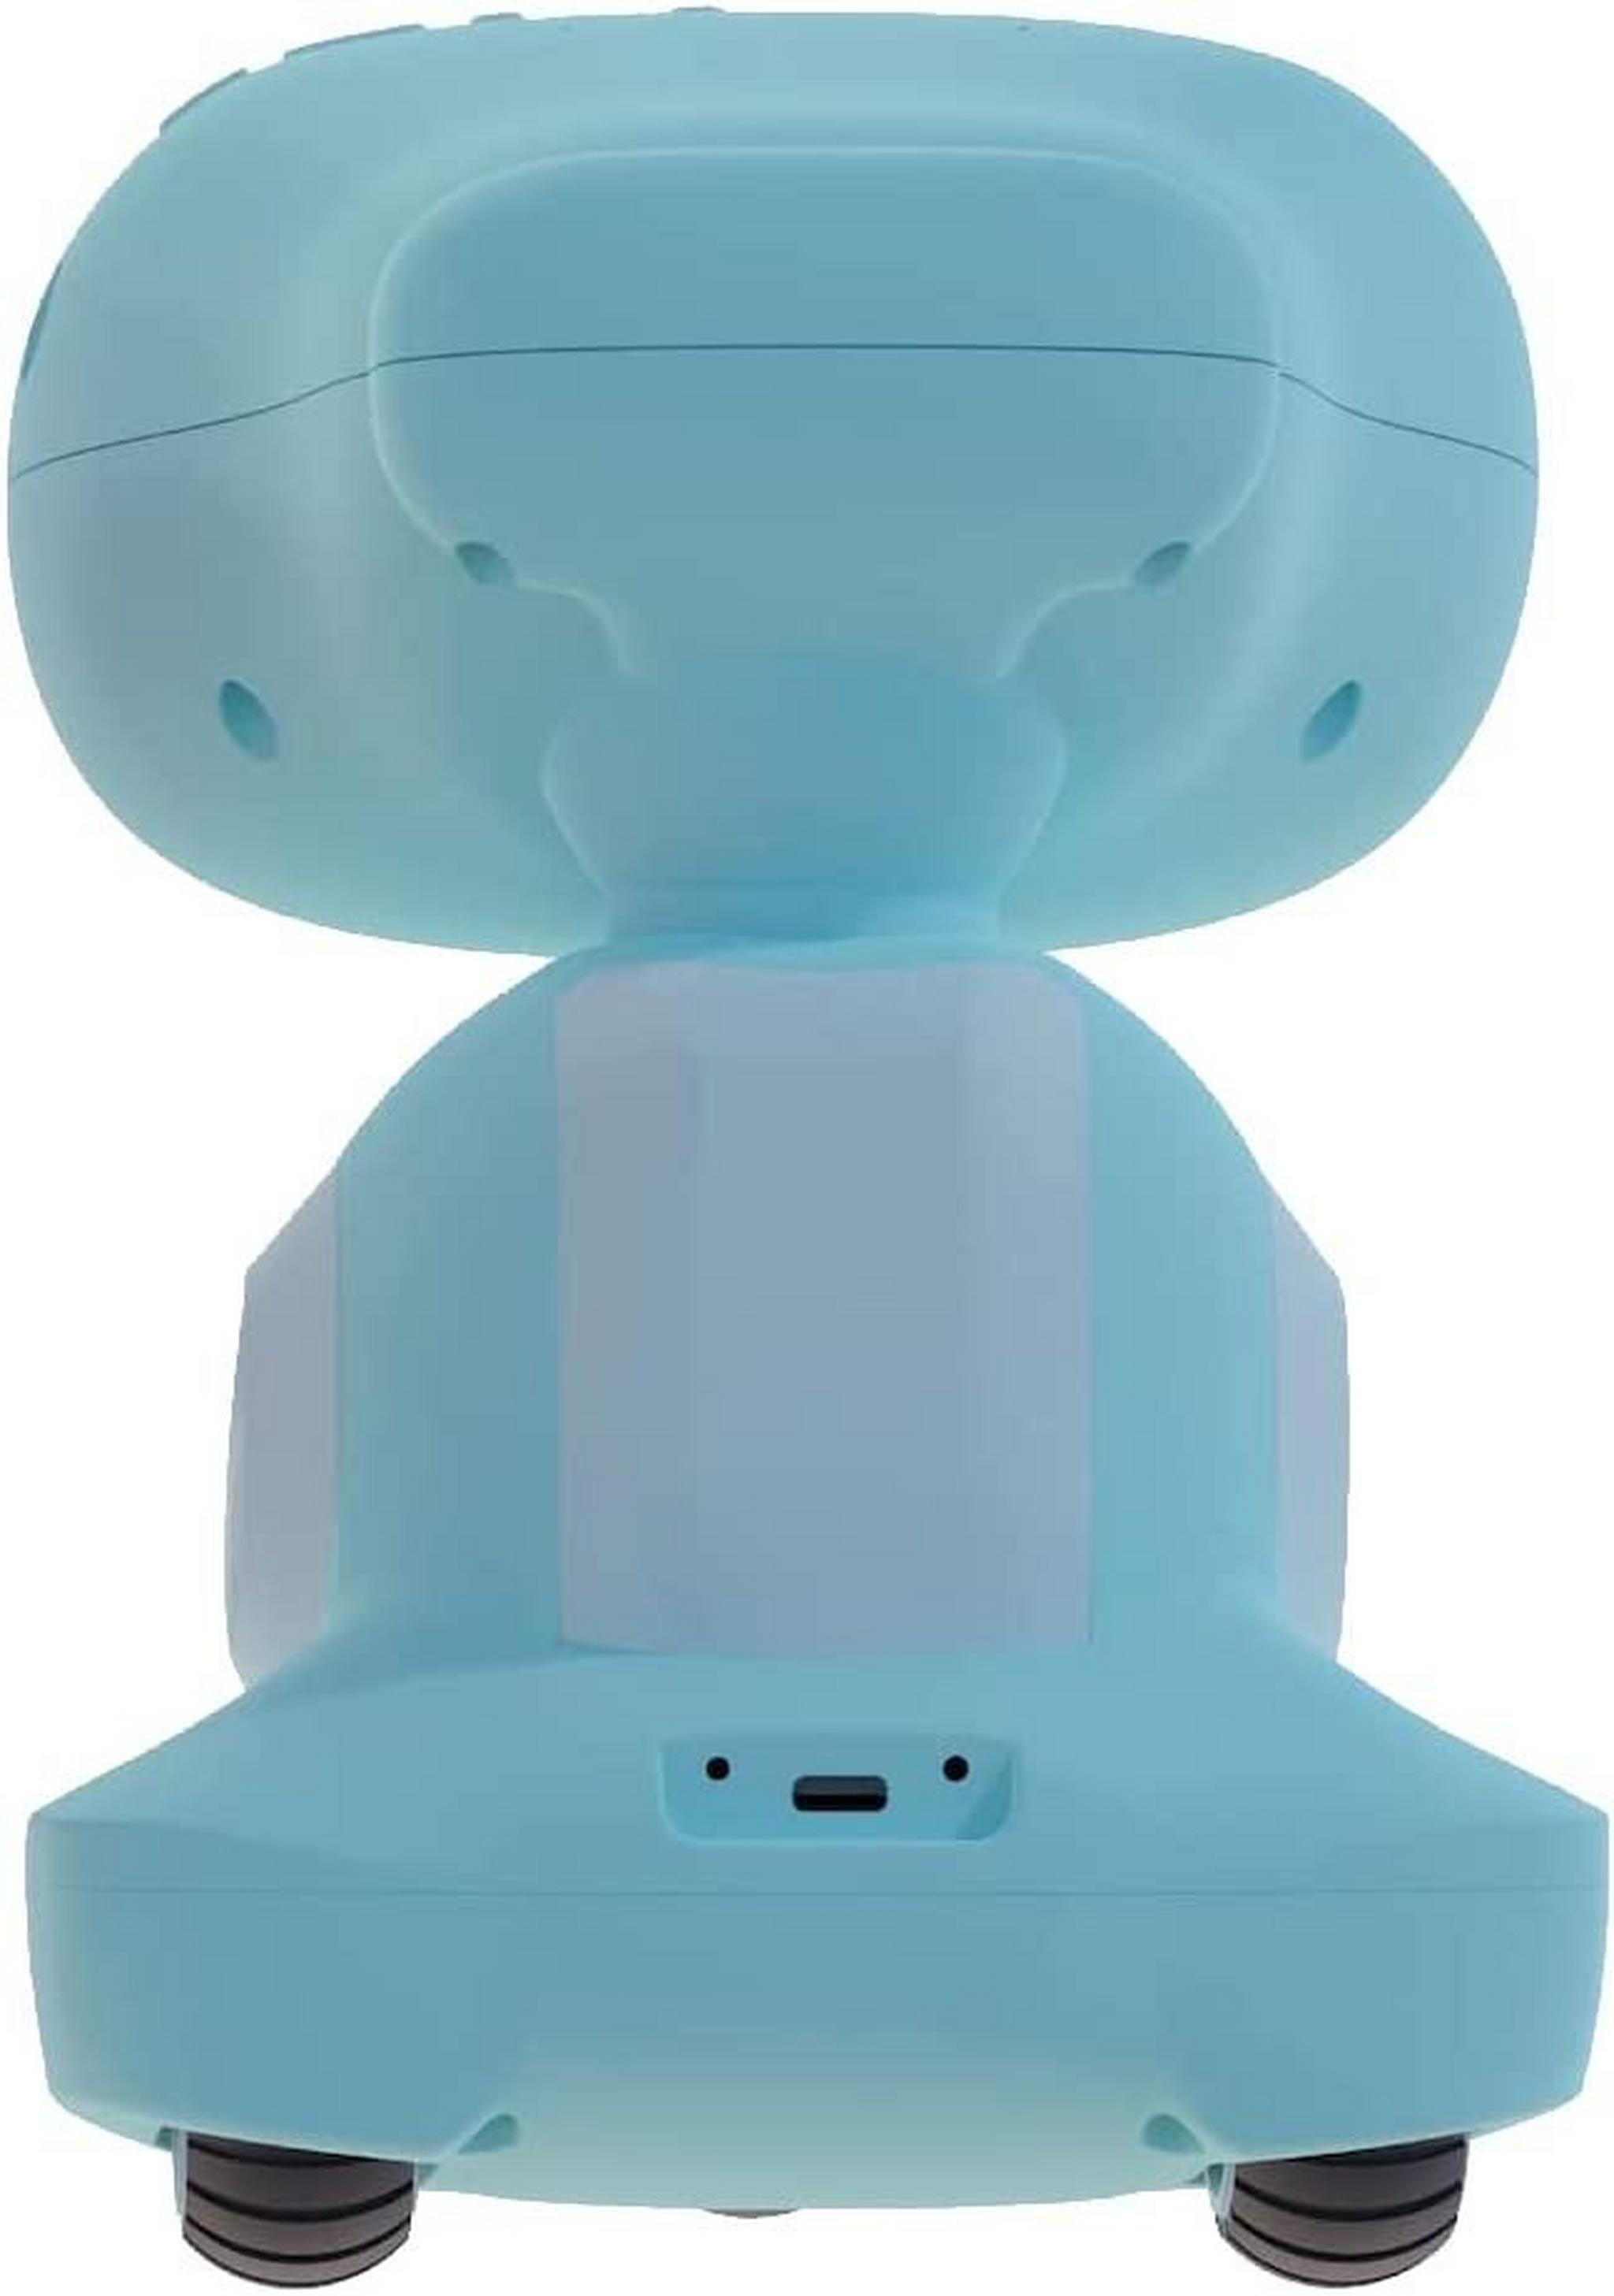 الروبوت التعليمي ميكو 3 مدعوم بالذكاء الاصطناعي - أزرق